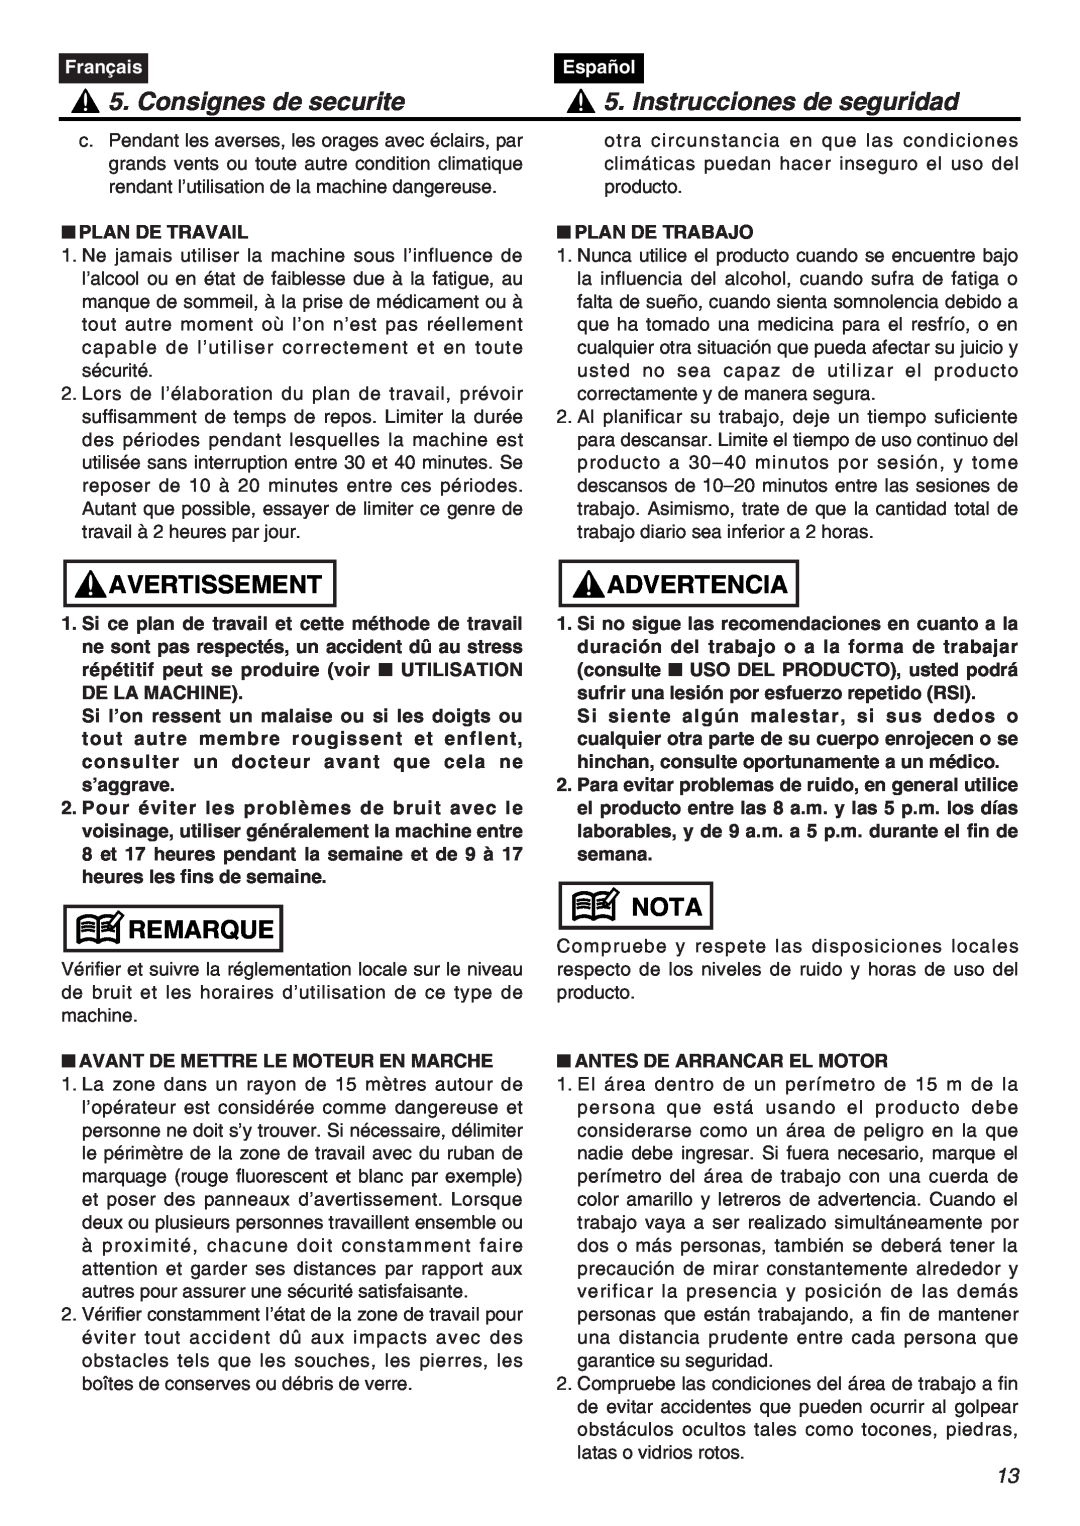 RedMax EXZ2401S-PH Consignes de securite, Instrucciones de seguridad, Avertissement, Remarque, Advertencia, Nota, Français 